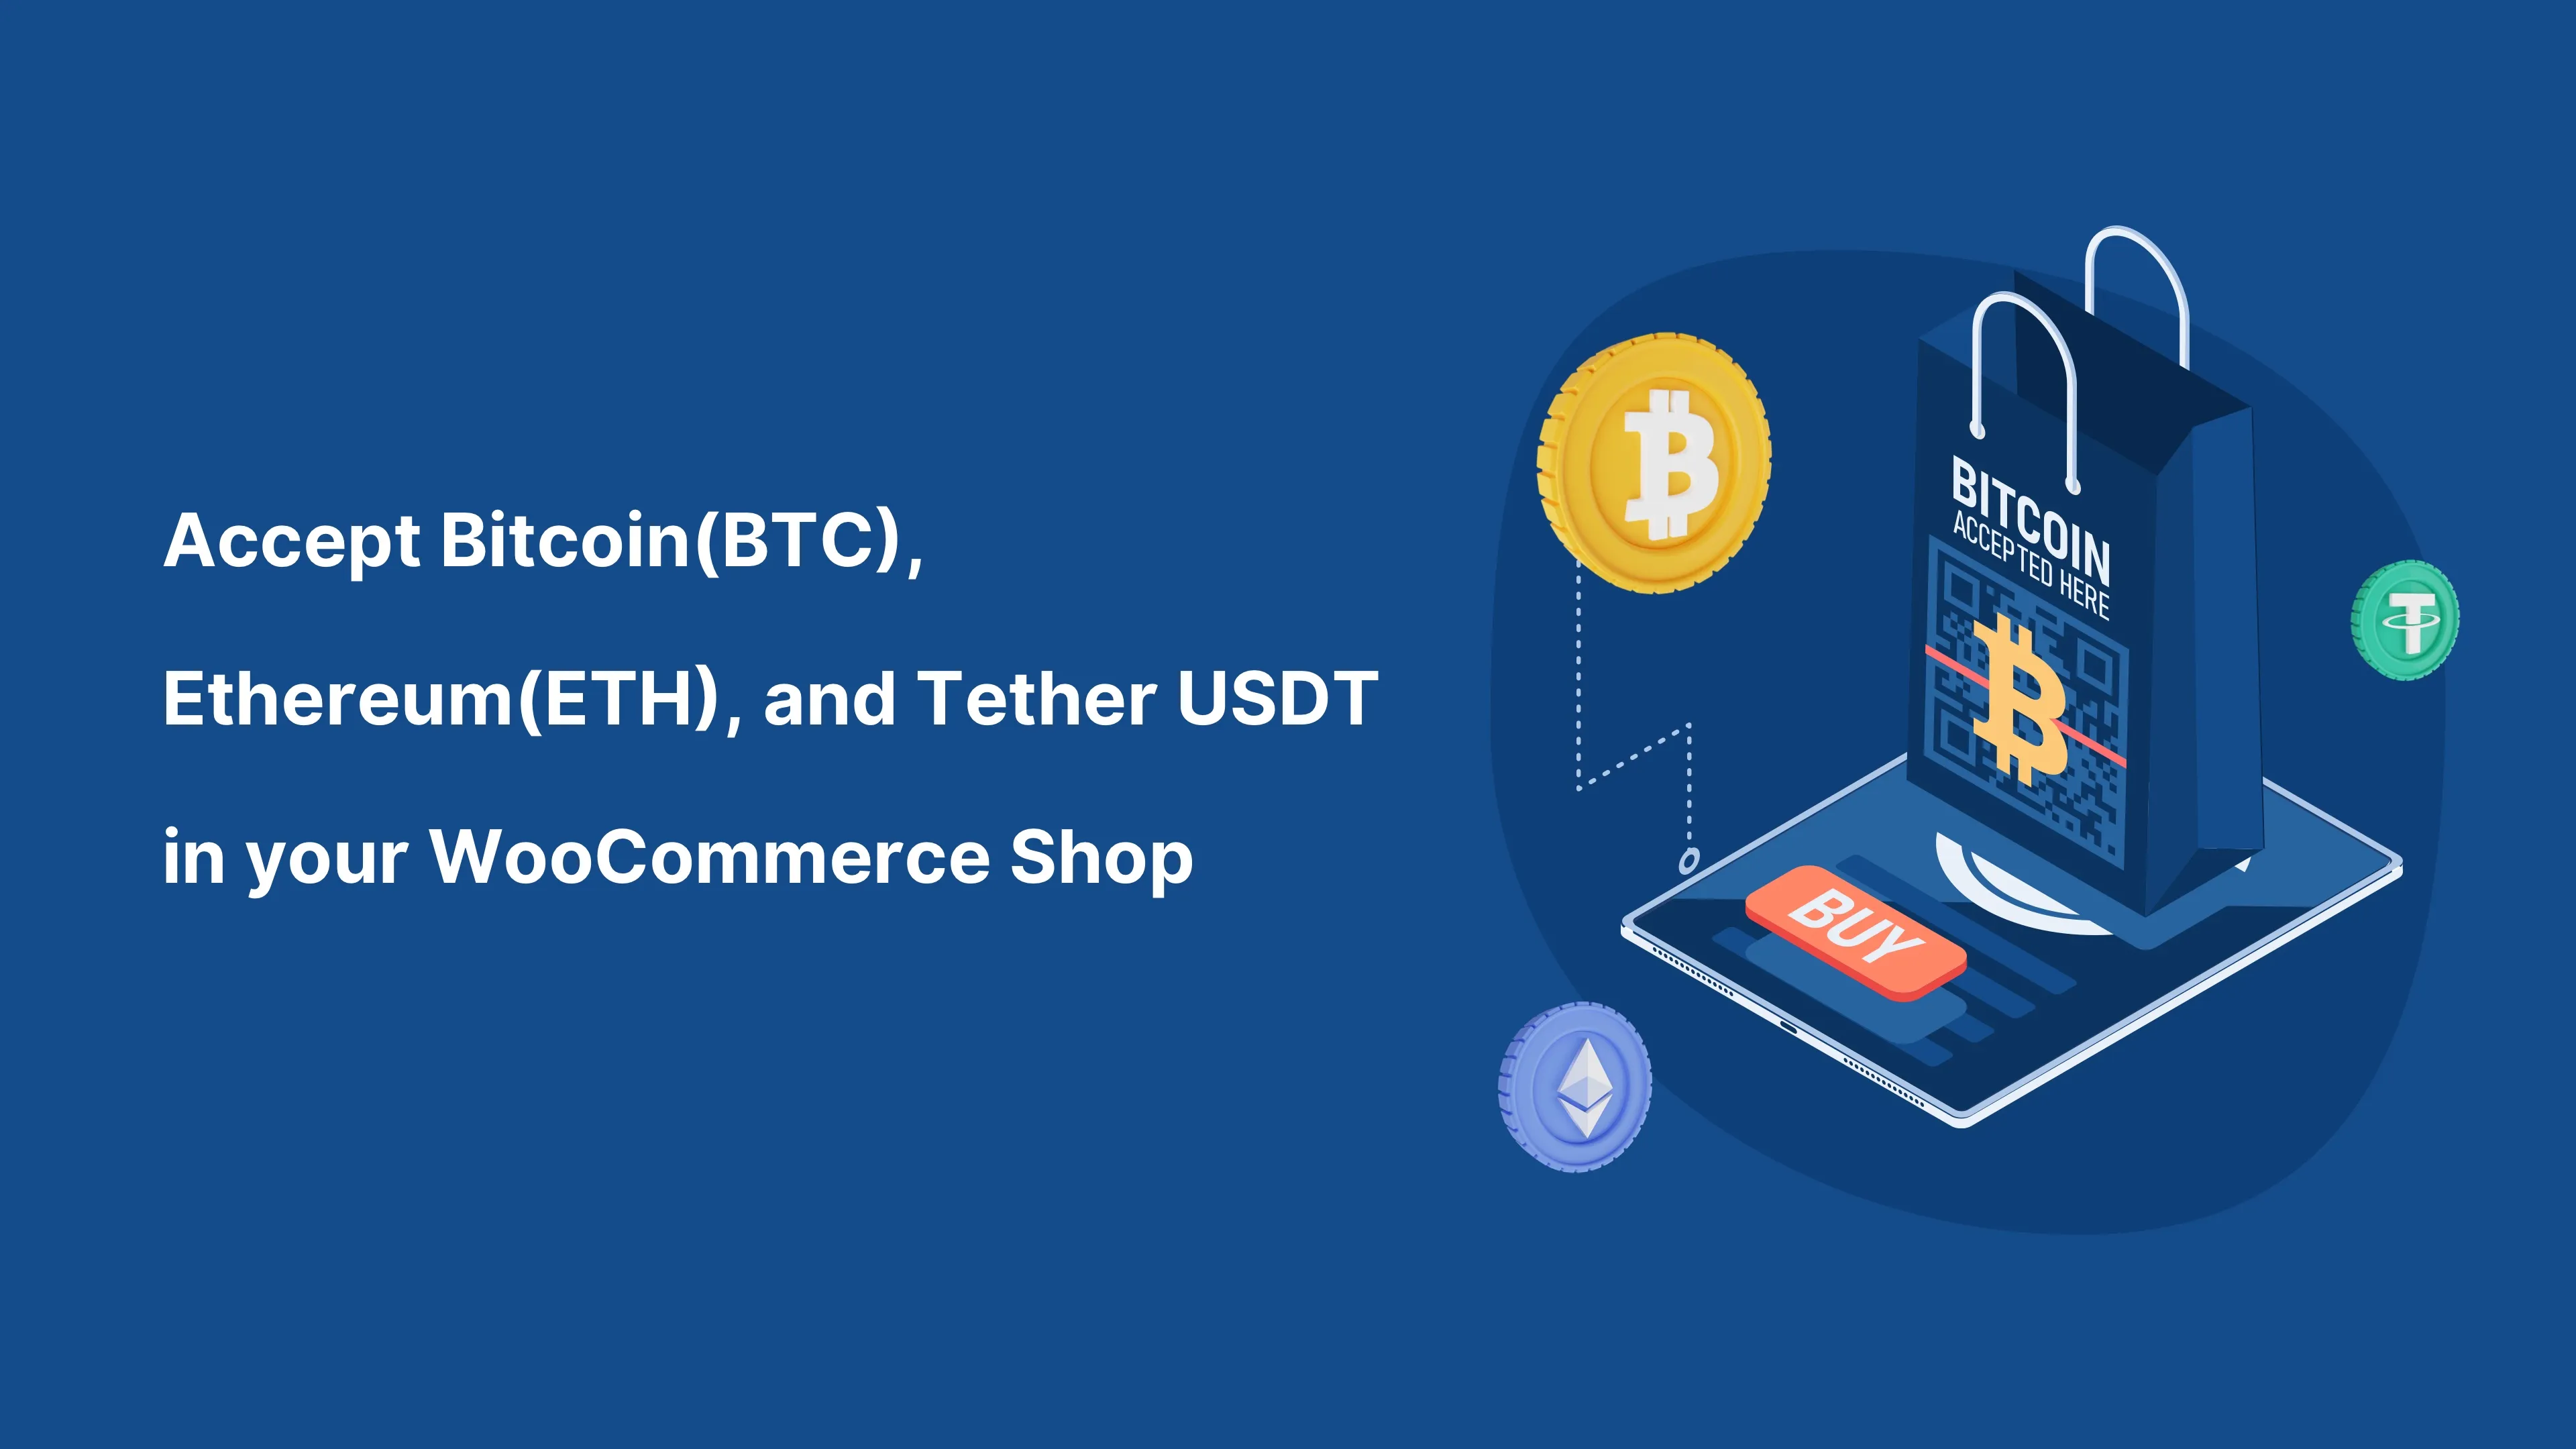 Sprejmite Bitcoin (BTC) in katero koli kriptovaluto v svoji trgovini WooCommerce